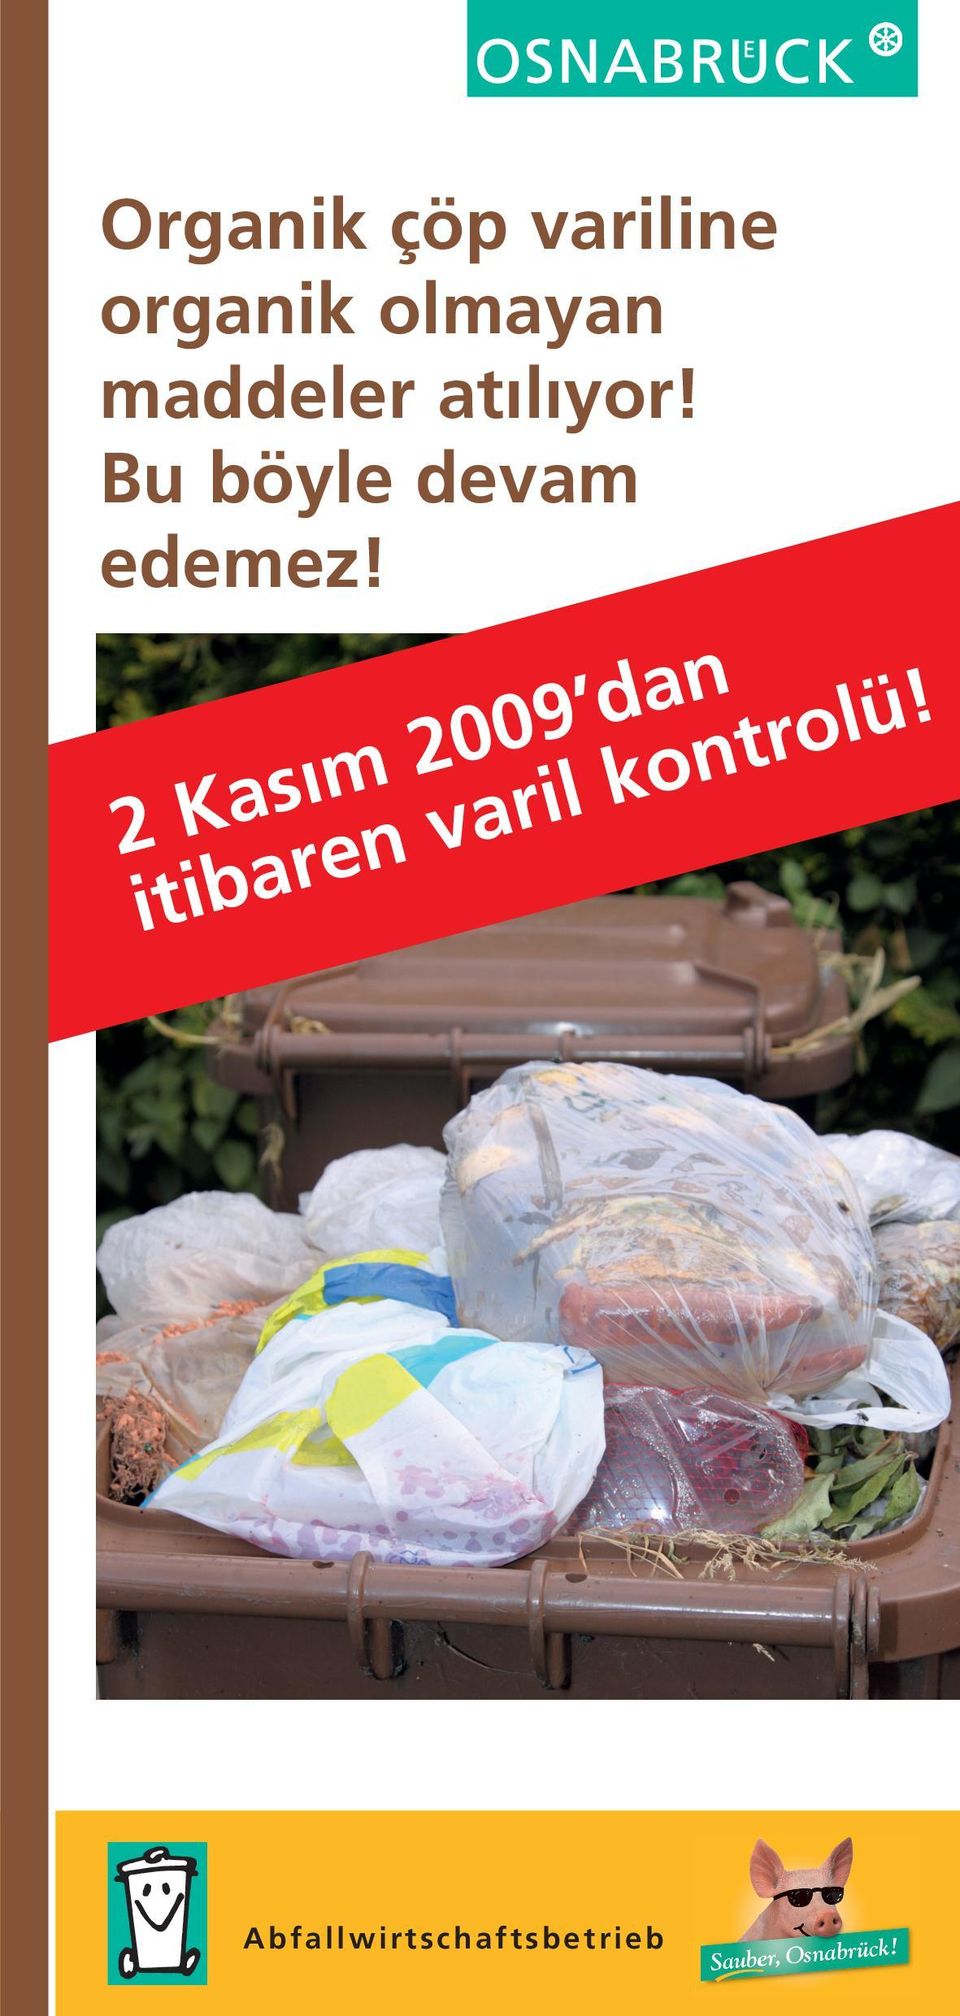 Bu gerçeğe karşı koyabilmek için, 2 Kasım 2009 tarihinden itibaren organik çöp varillerini kontrol etme yoluna gitmeye karar verdik.